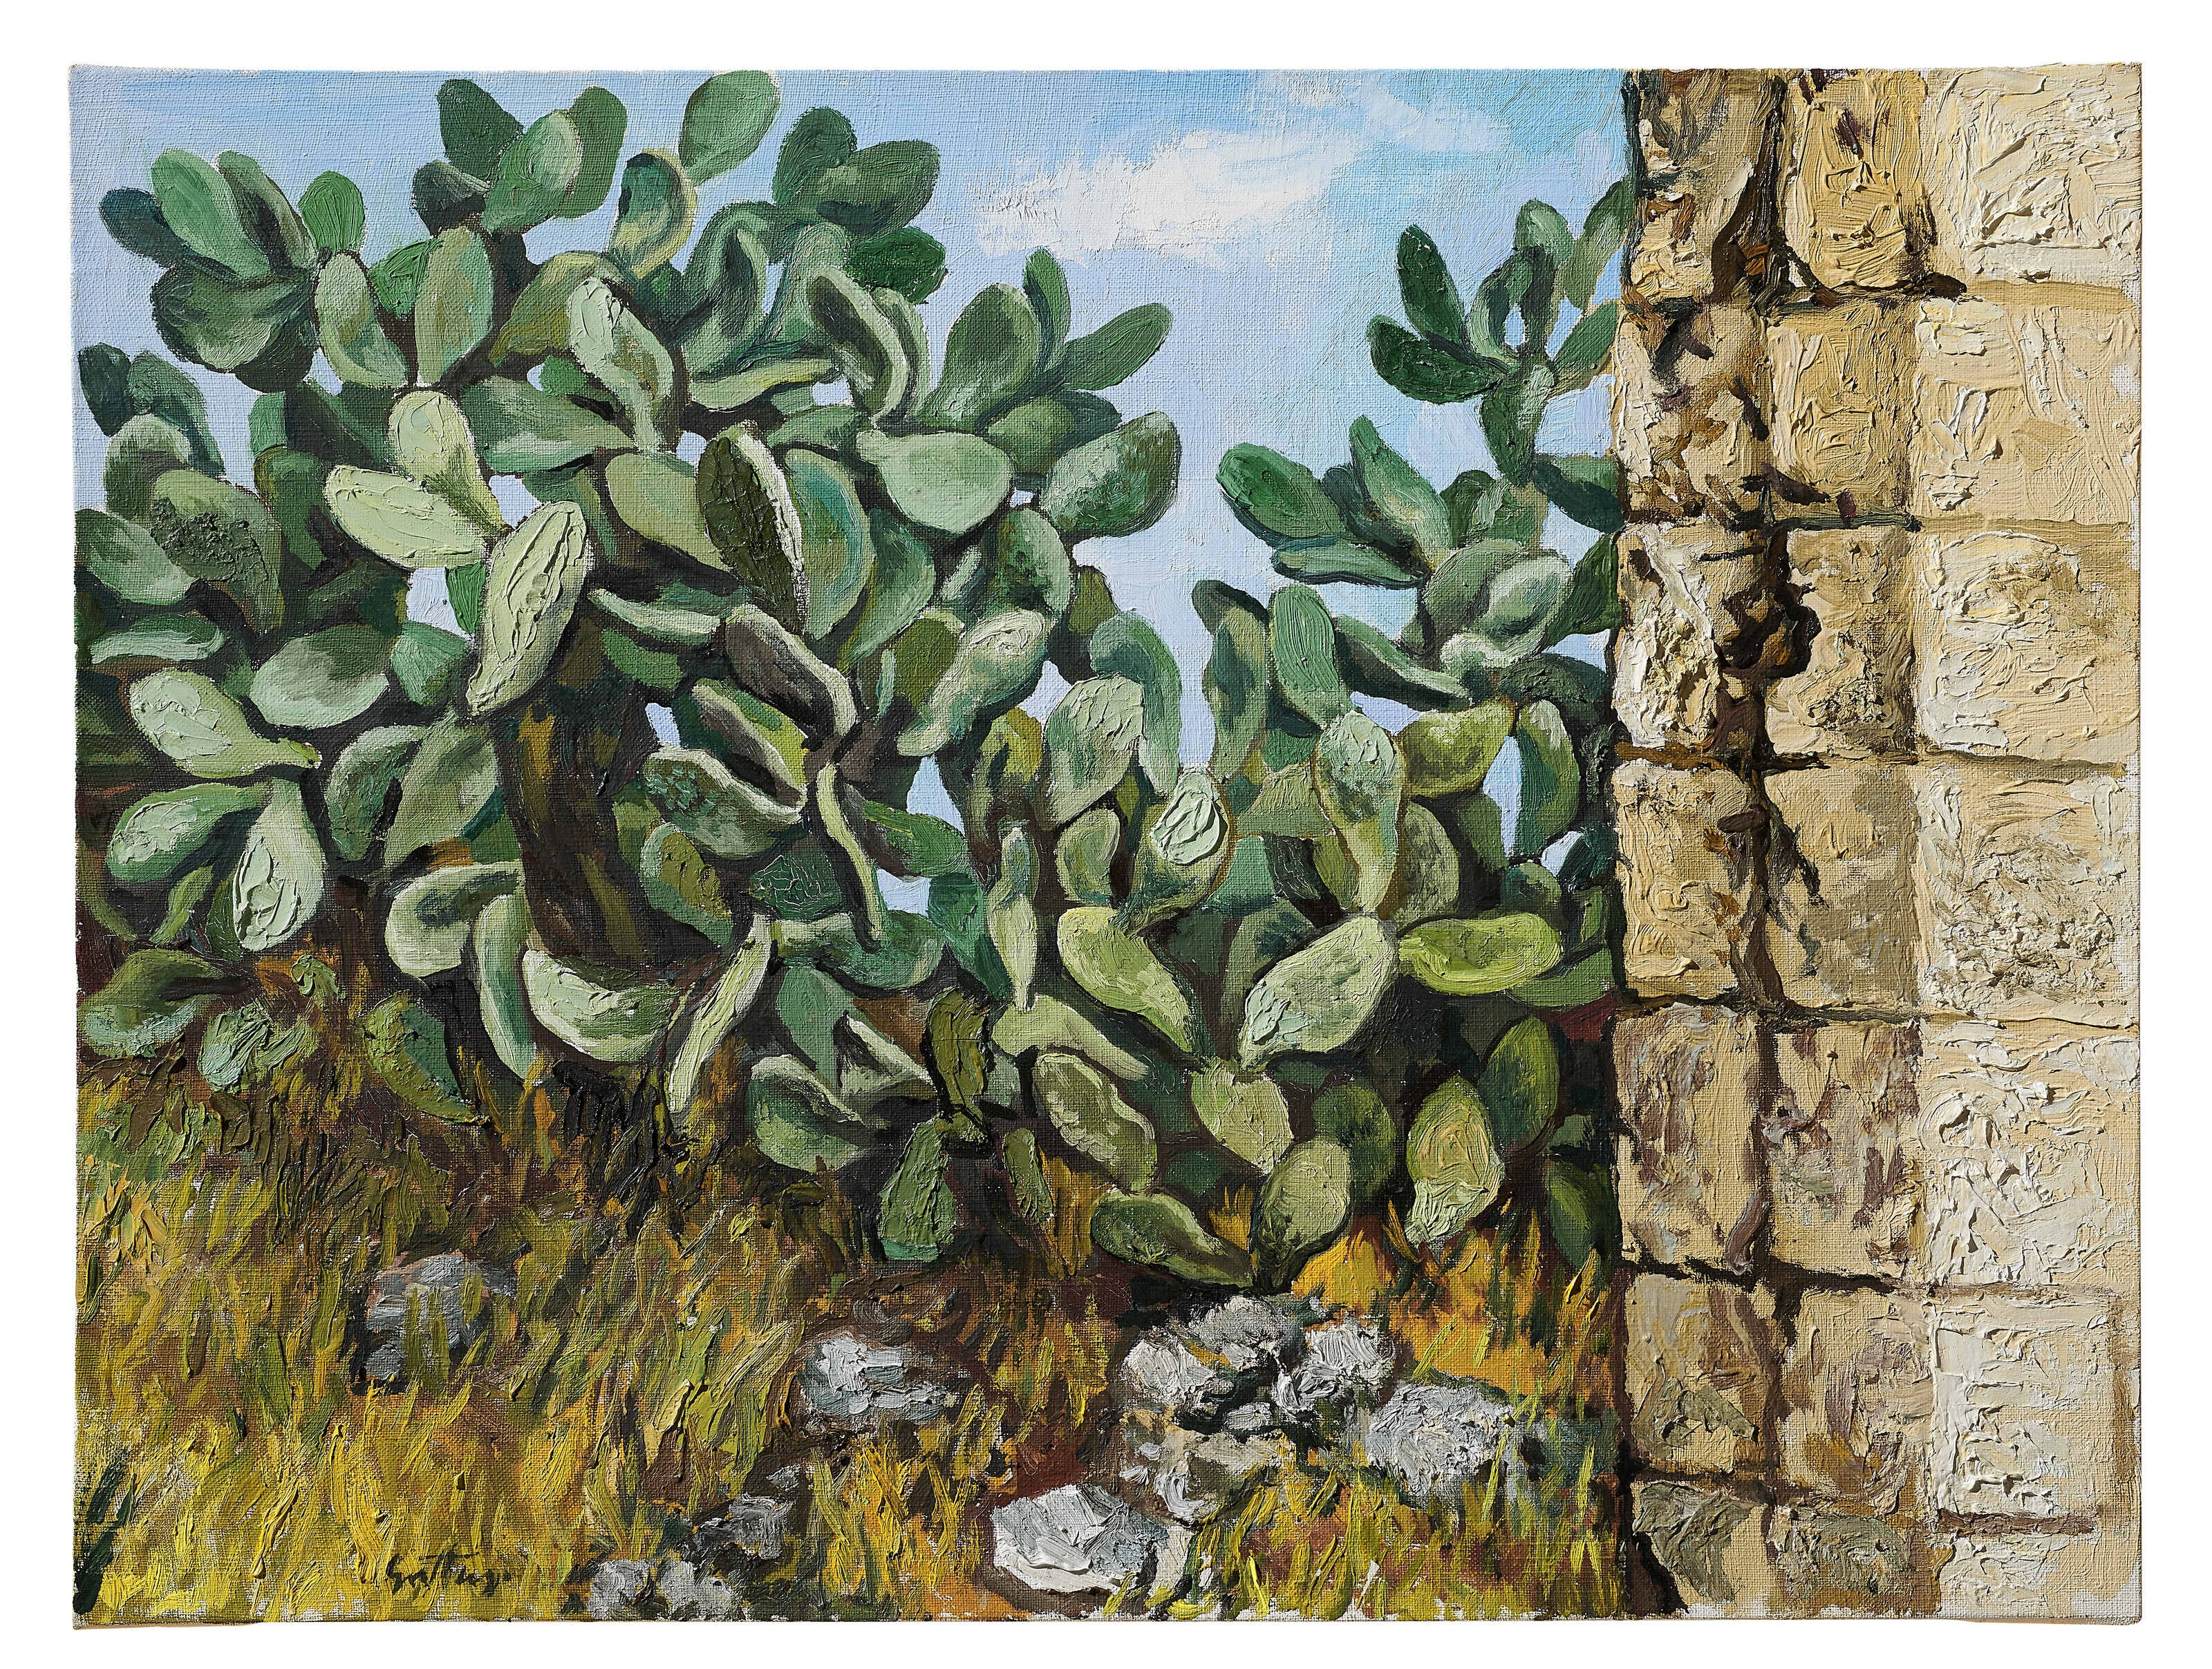 Cactus by Renato Guttuso, 1976